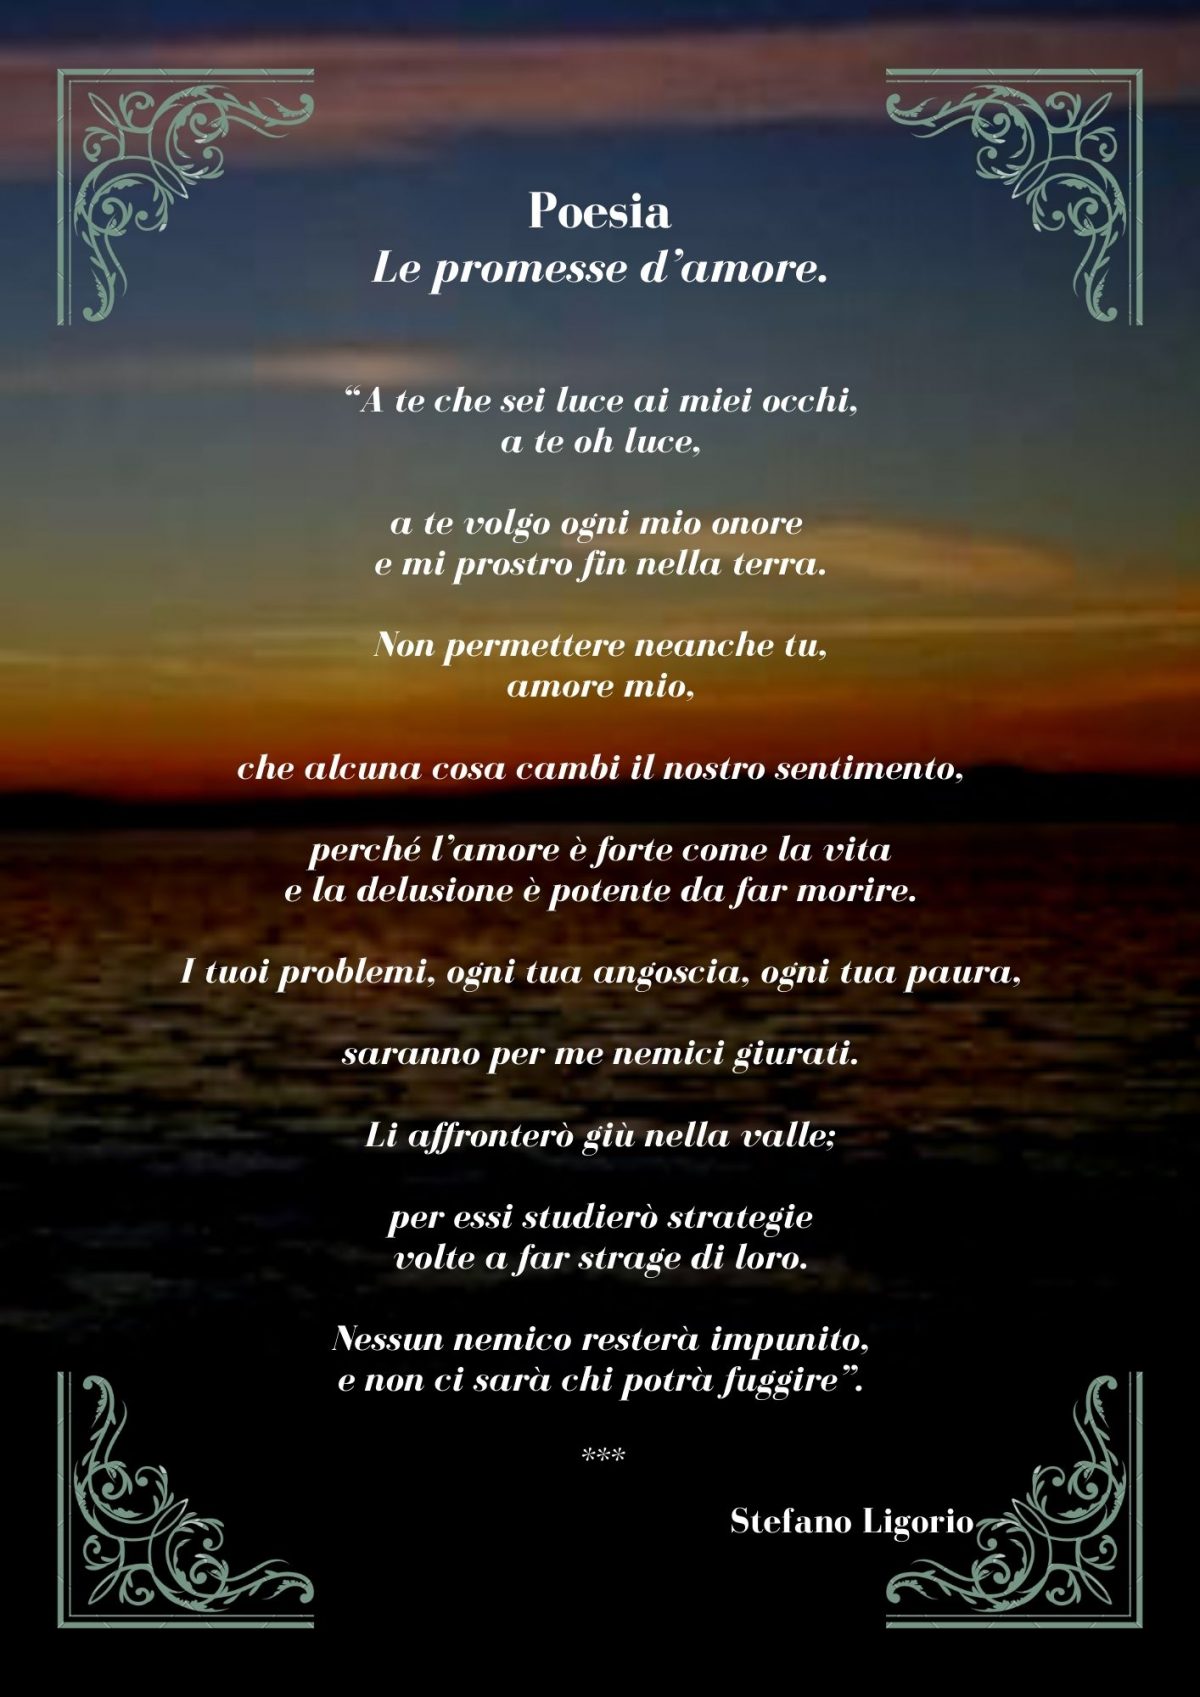 Alcune poesie non ‘brevi’ di Stefano Ligorio.